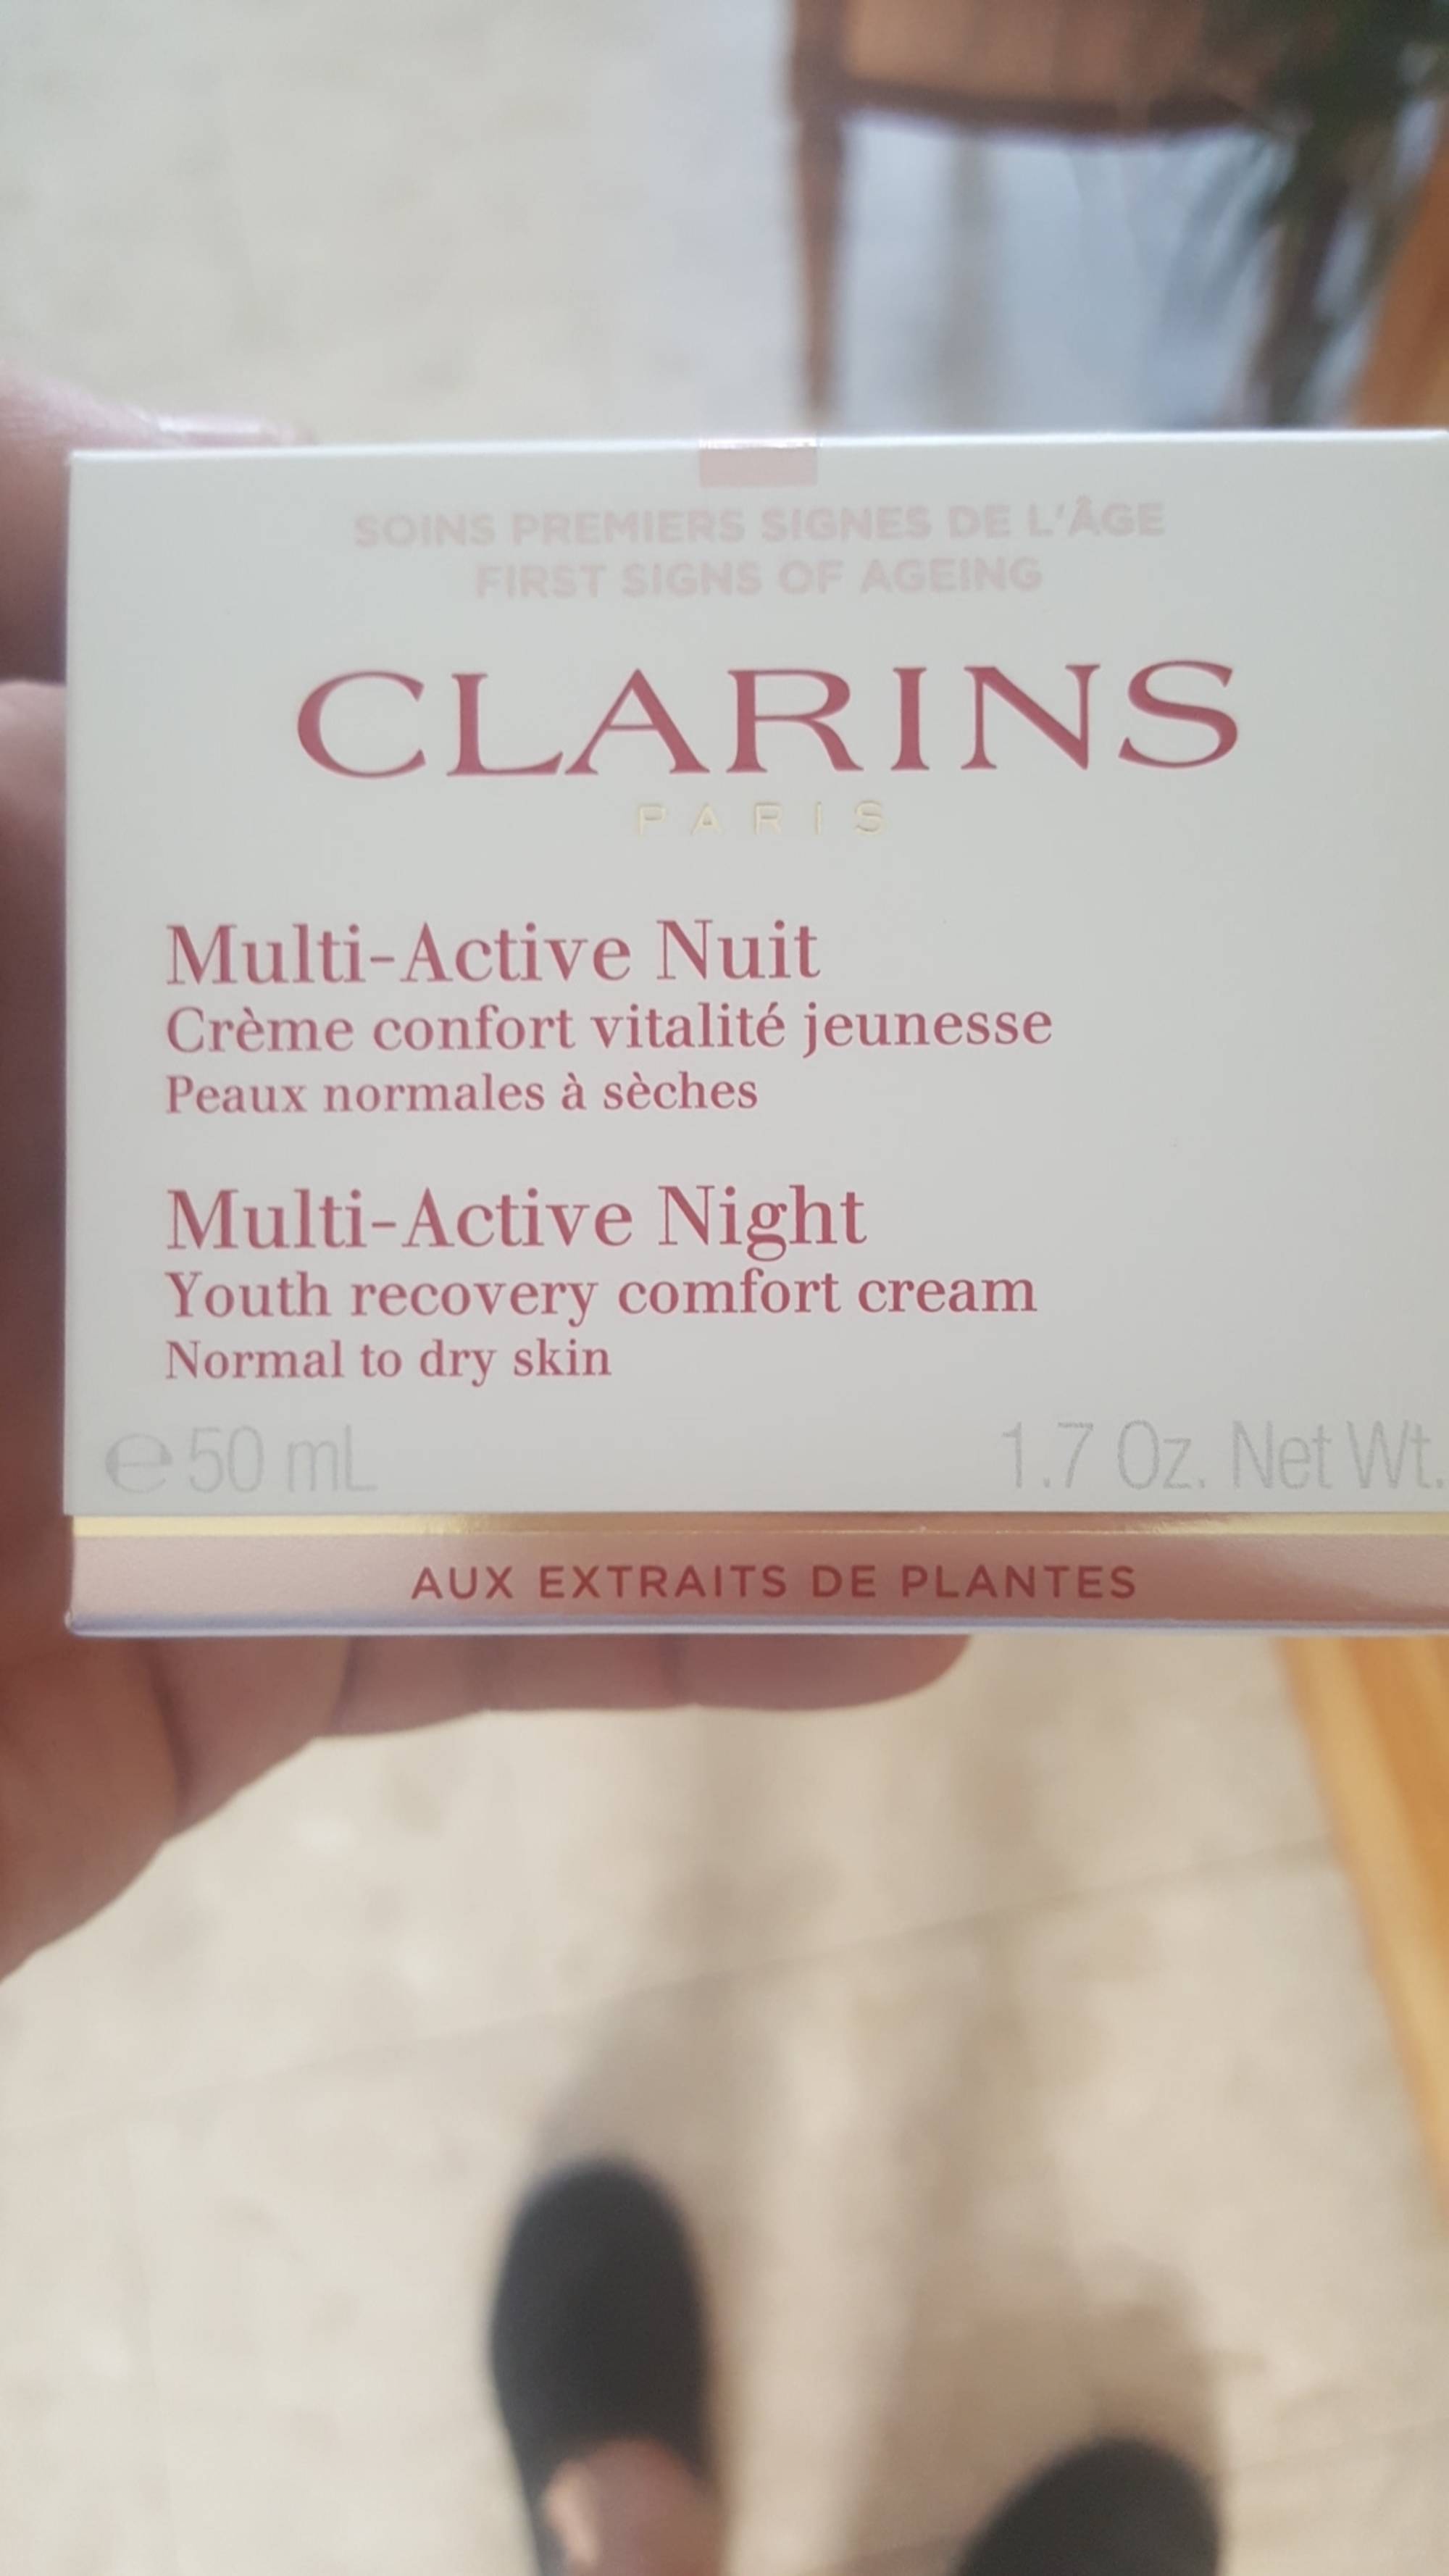 CLARINS - Multi-active nuit - Crème confort vitalité jeunesse